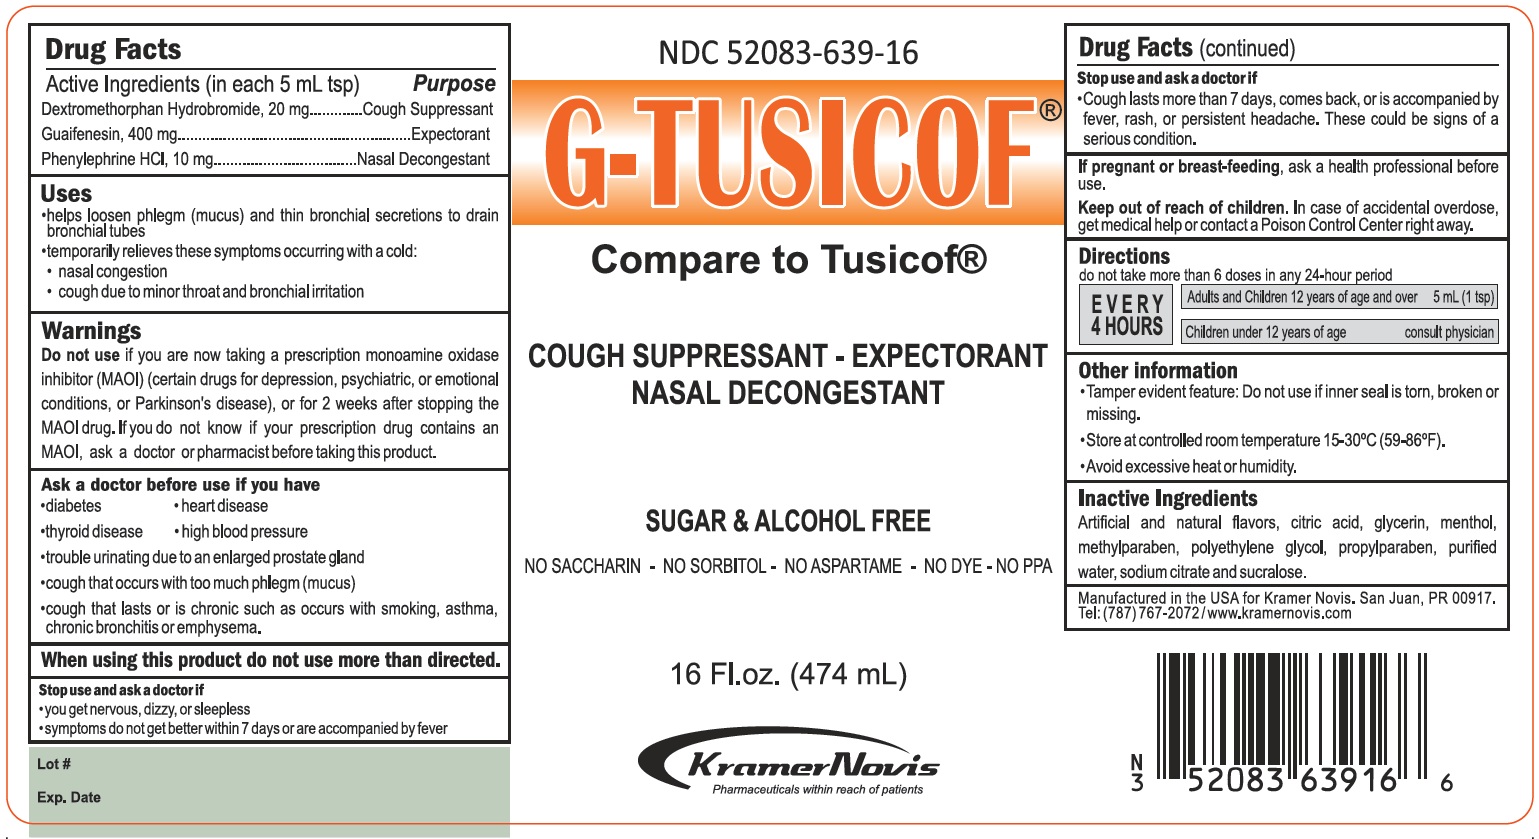 G-tusicof | Dextromethorphan, Guaifenesin, And Phenylephrine Syrup Breastfeeding